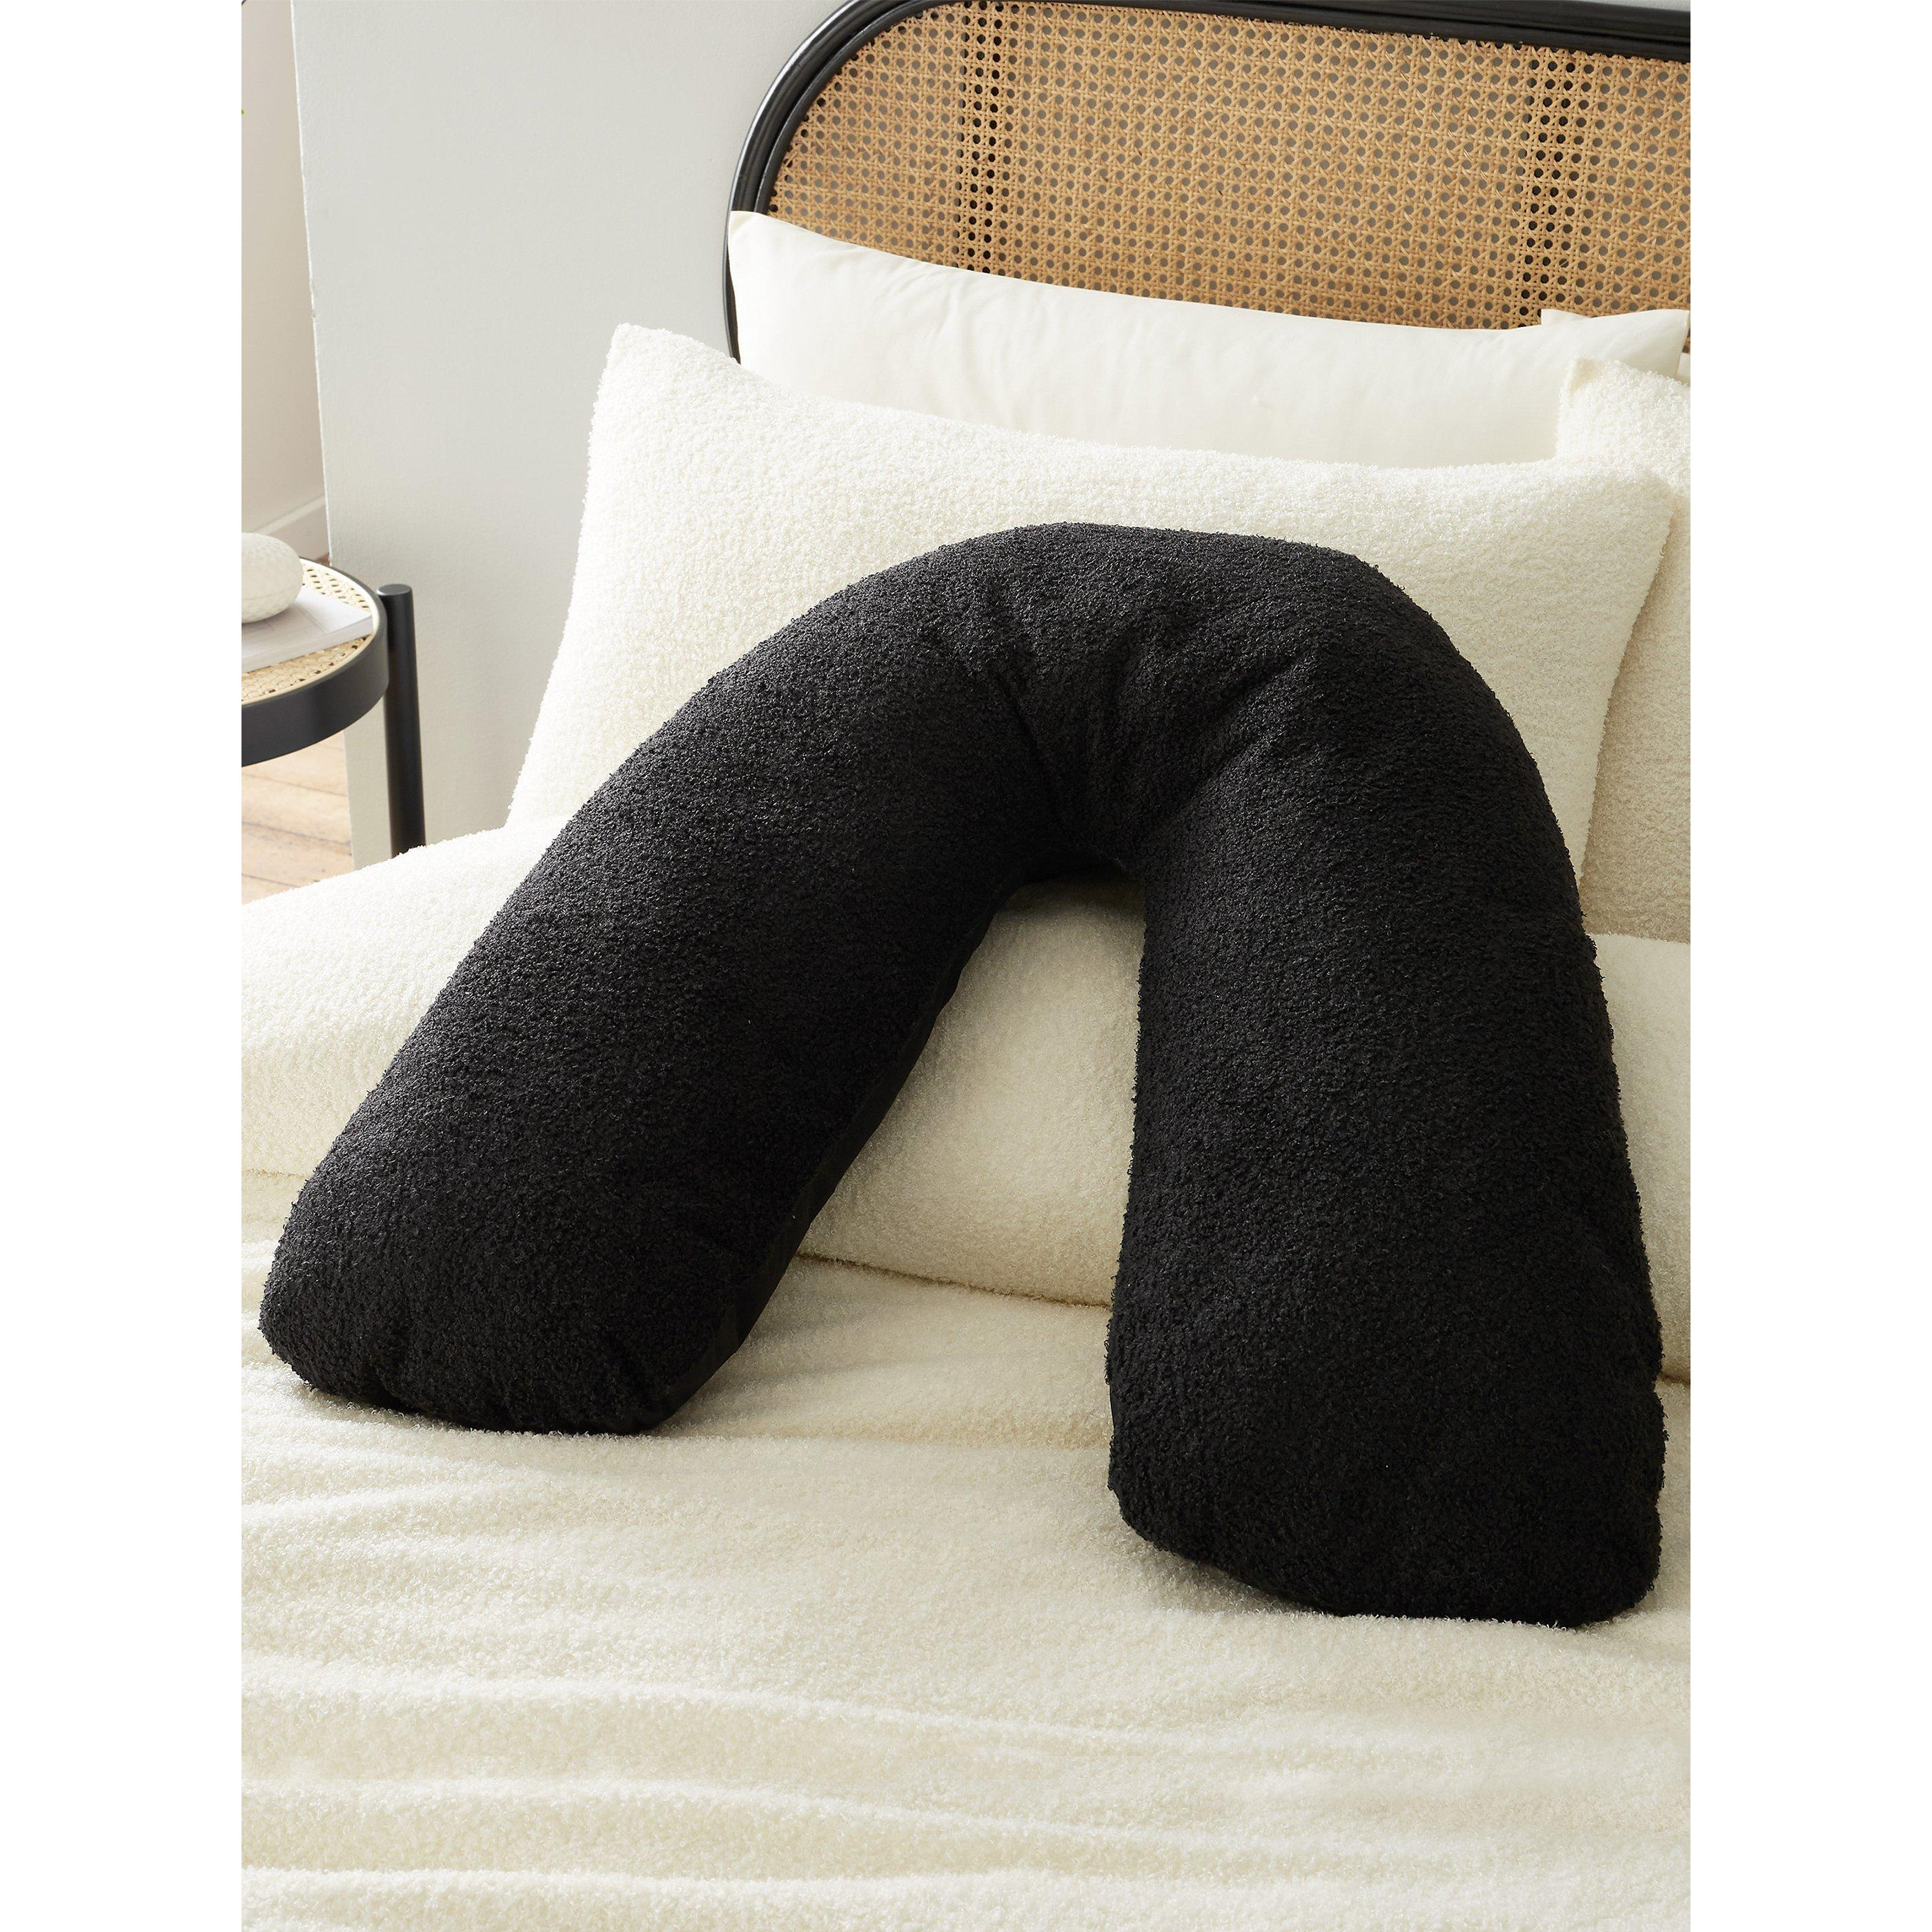 'Soft Boucle' Cushion - image 1